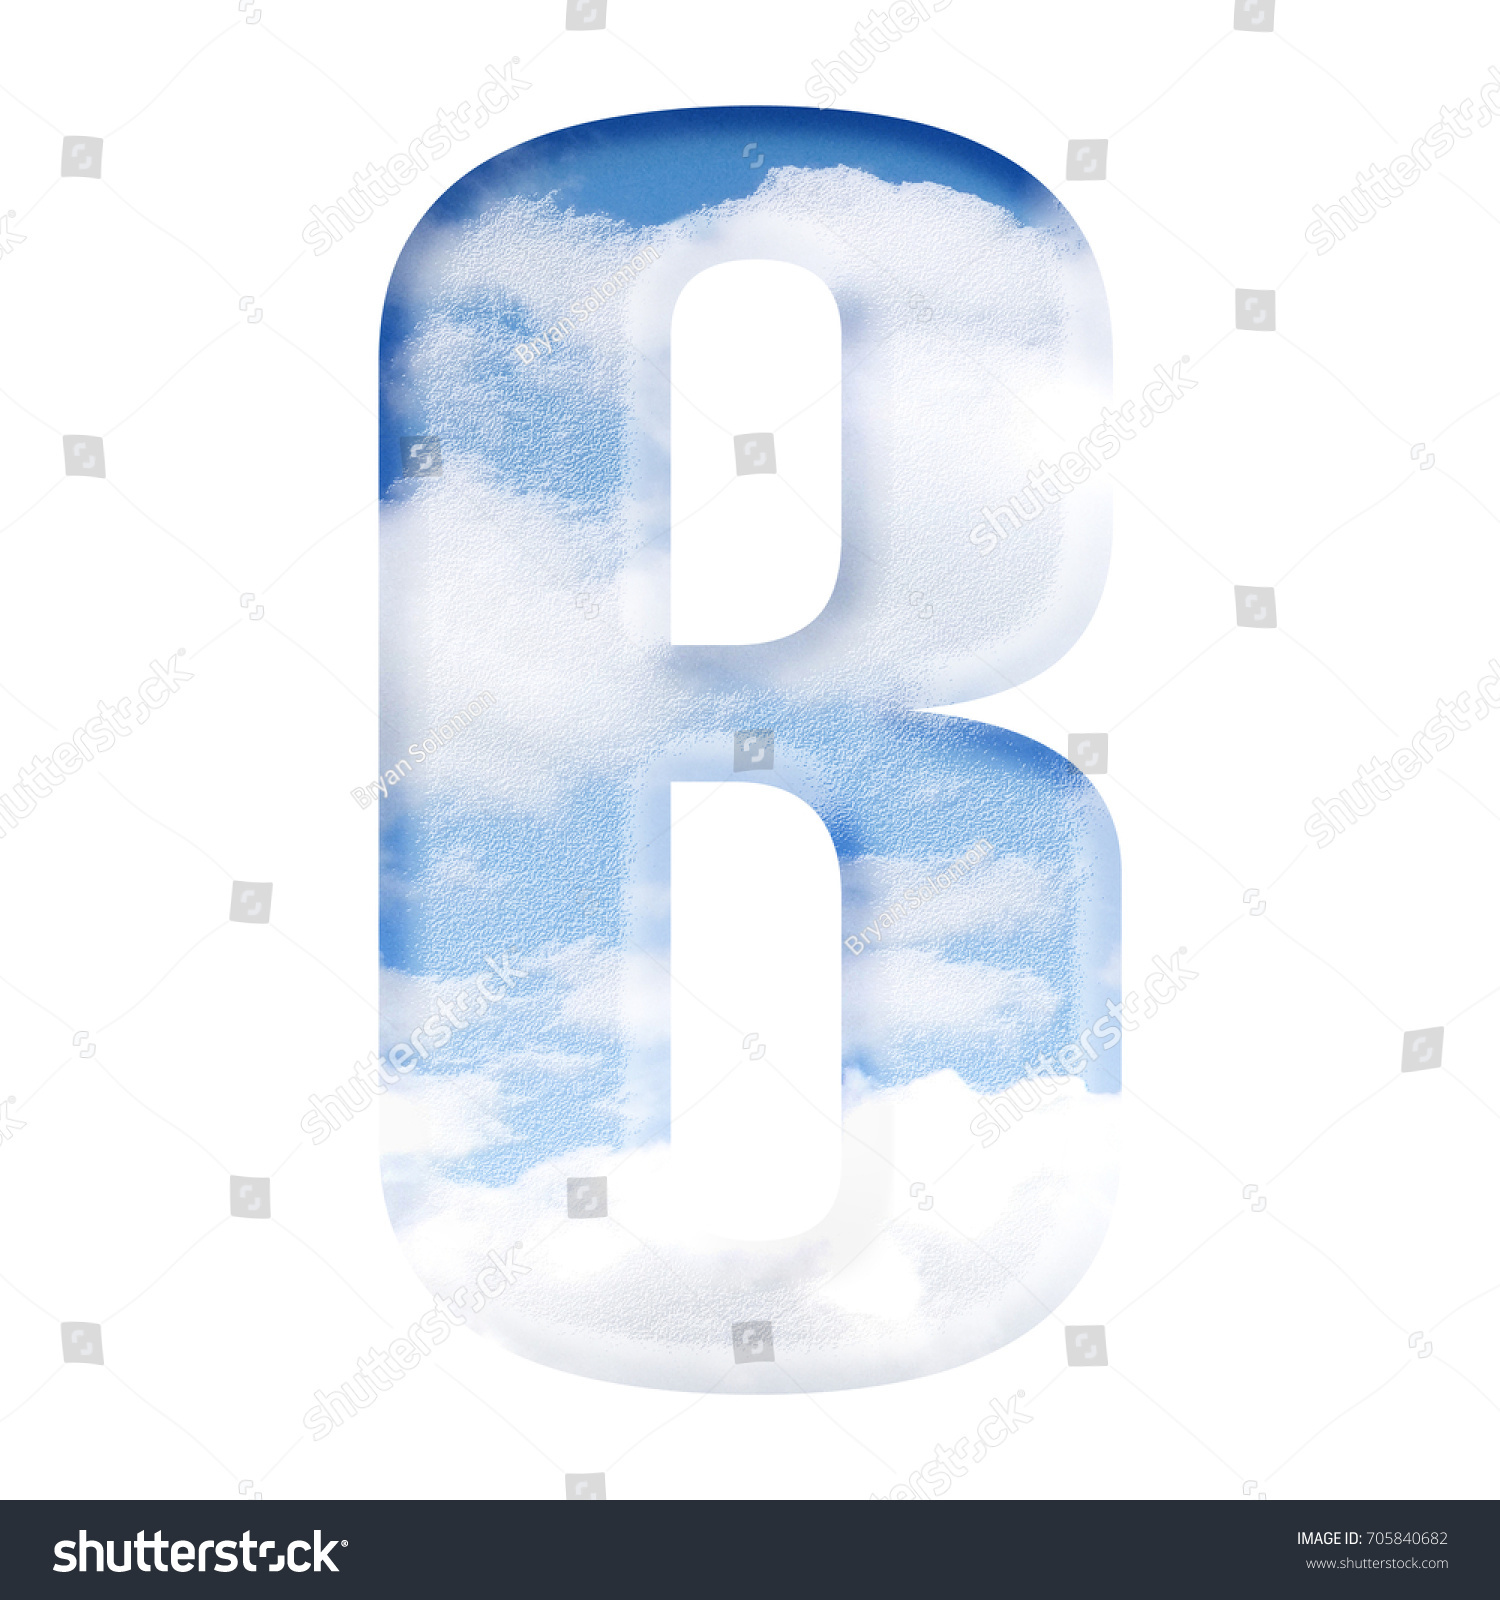 Image result for letter B dream